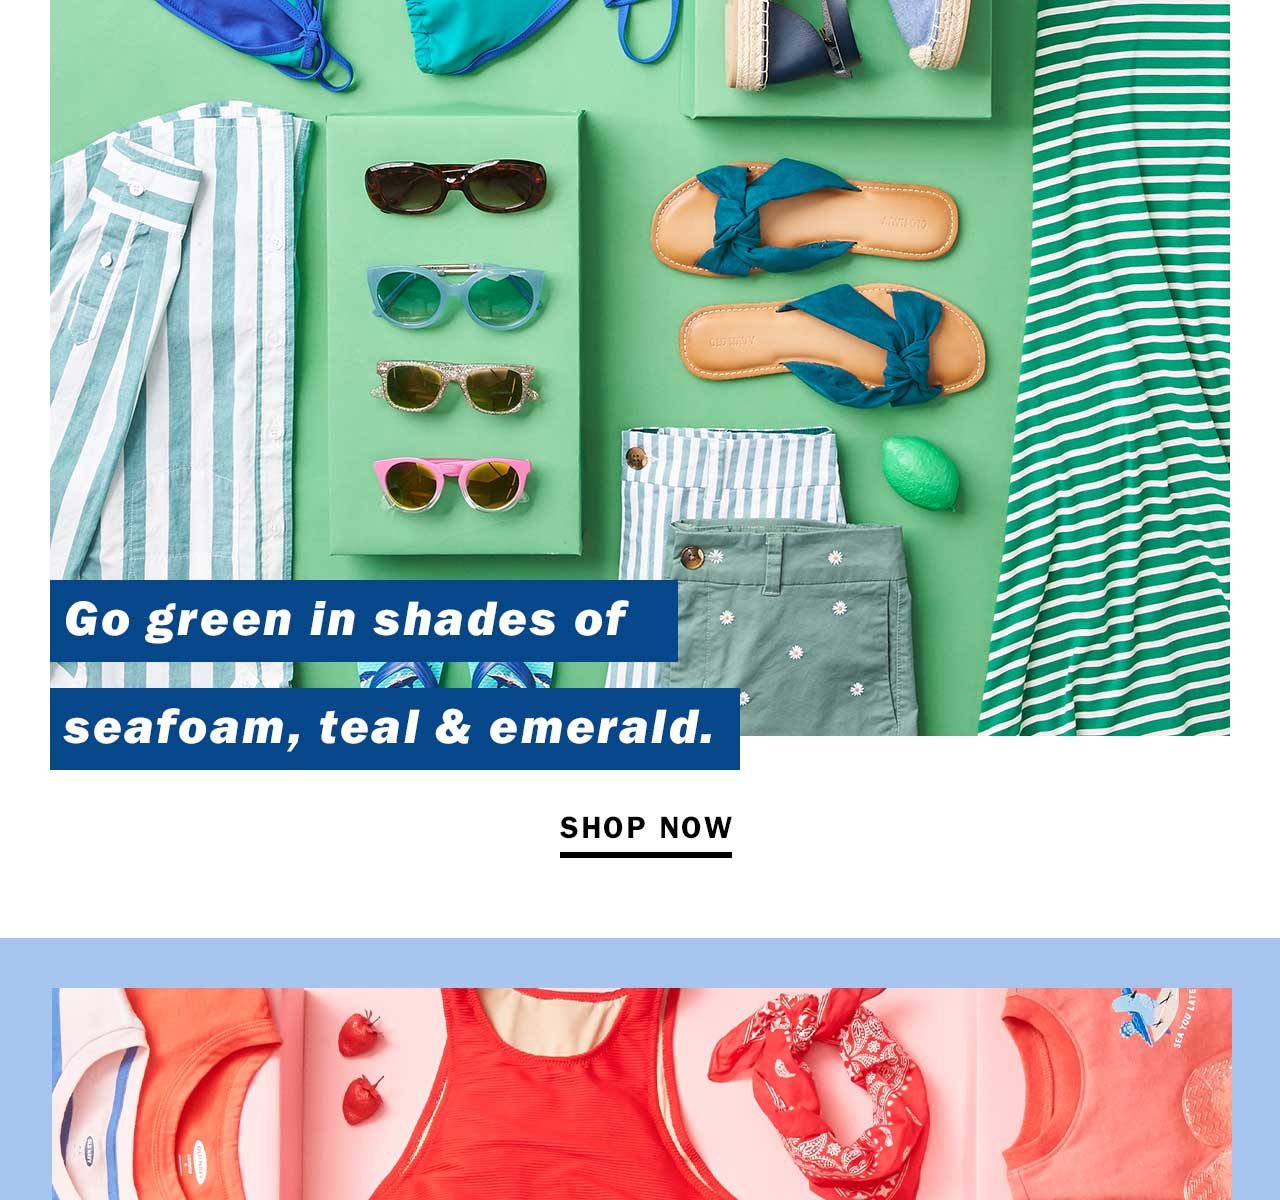 Go green in shades of seafoam